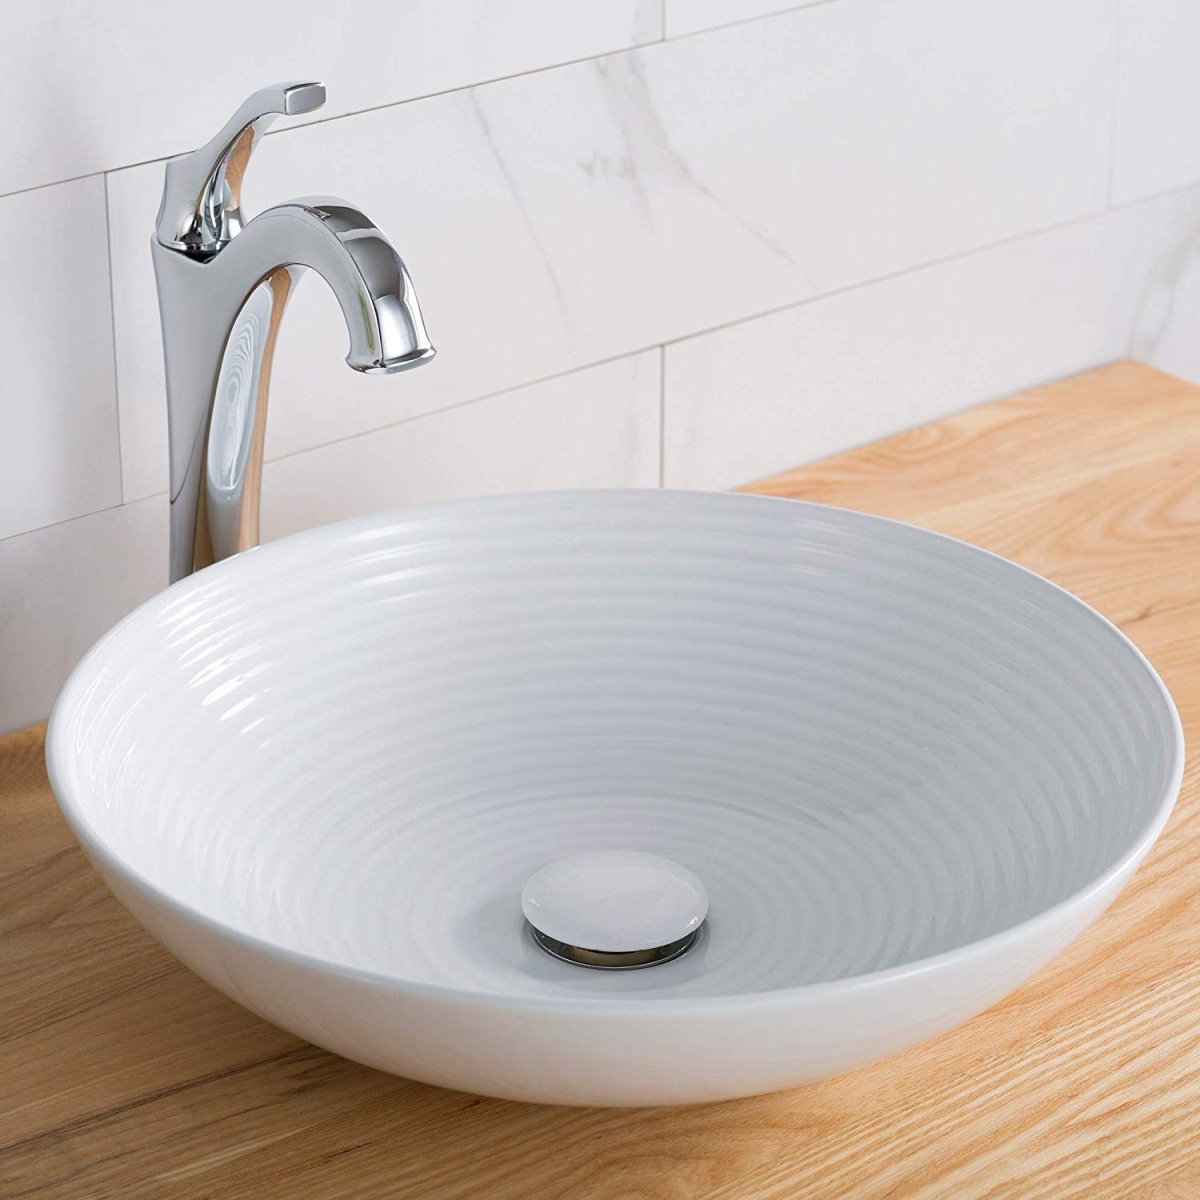 Kraus Kcv-203gwh 16.5 X 4.37 In. Round Porcelain Ceramic Vessel Bathroom Sink, White